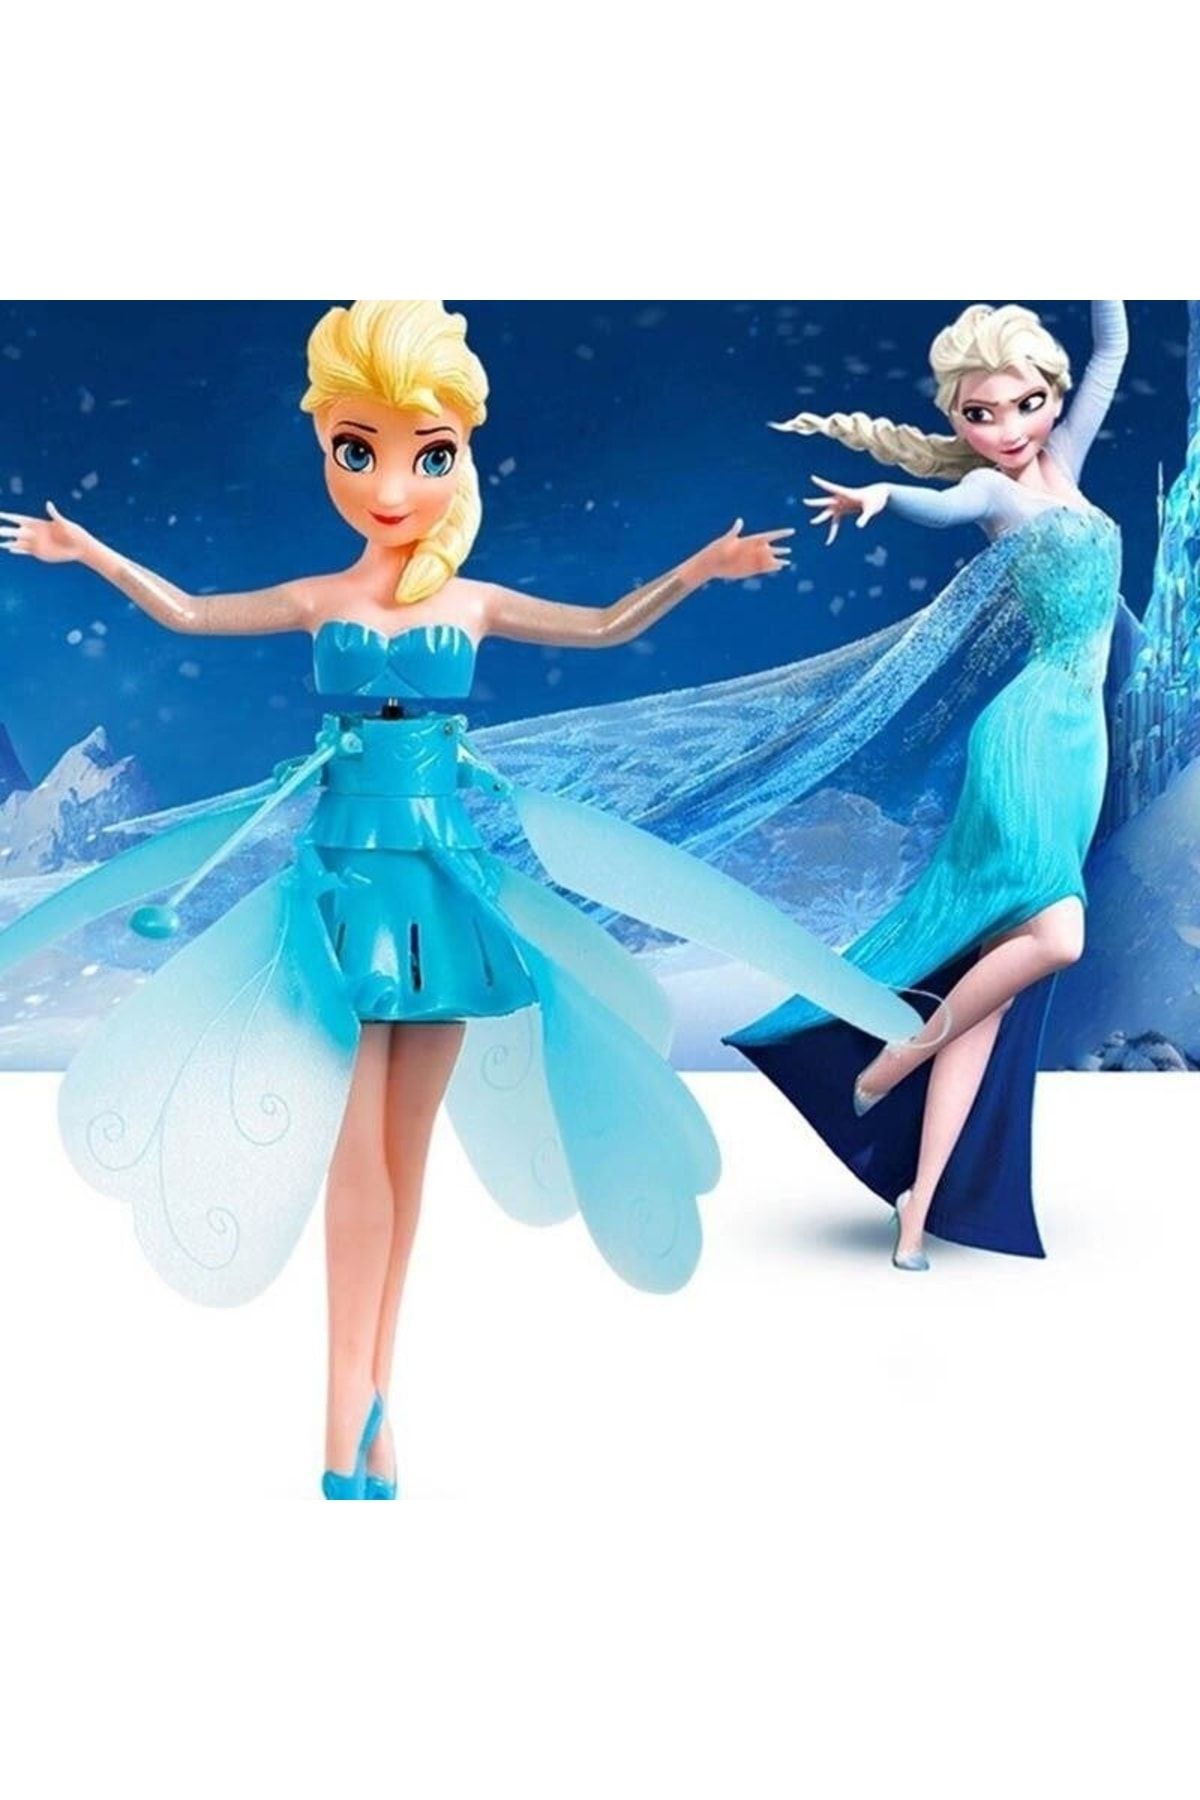 BYOZTEK Princess Prenses Elsa Frozen Uçan Peri El Sensörlü Şarjlı Uçan Bebek